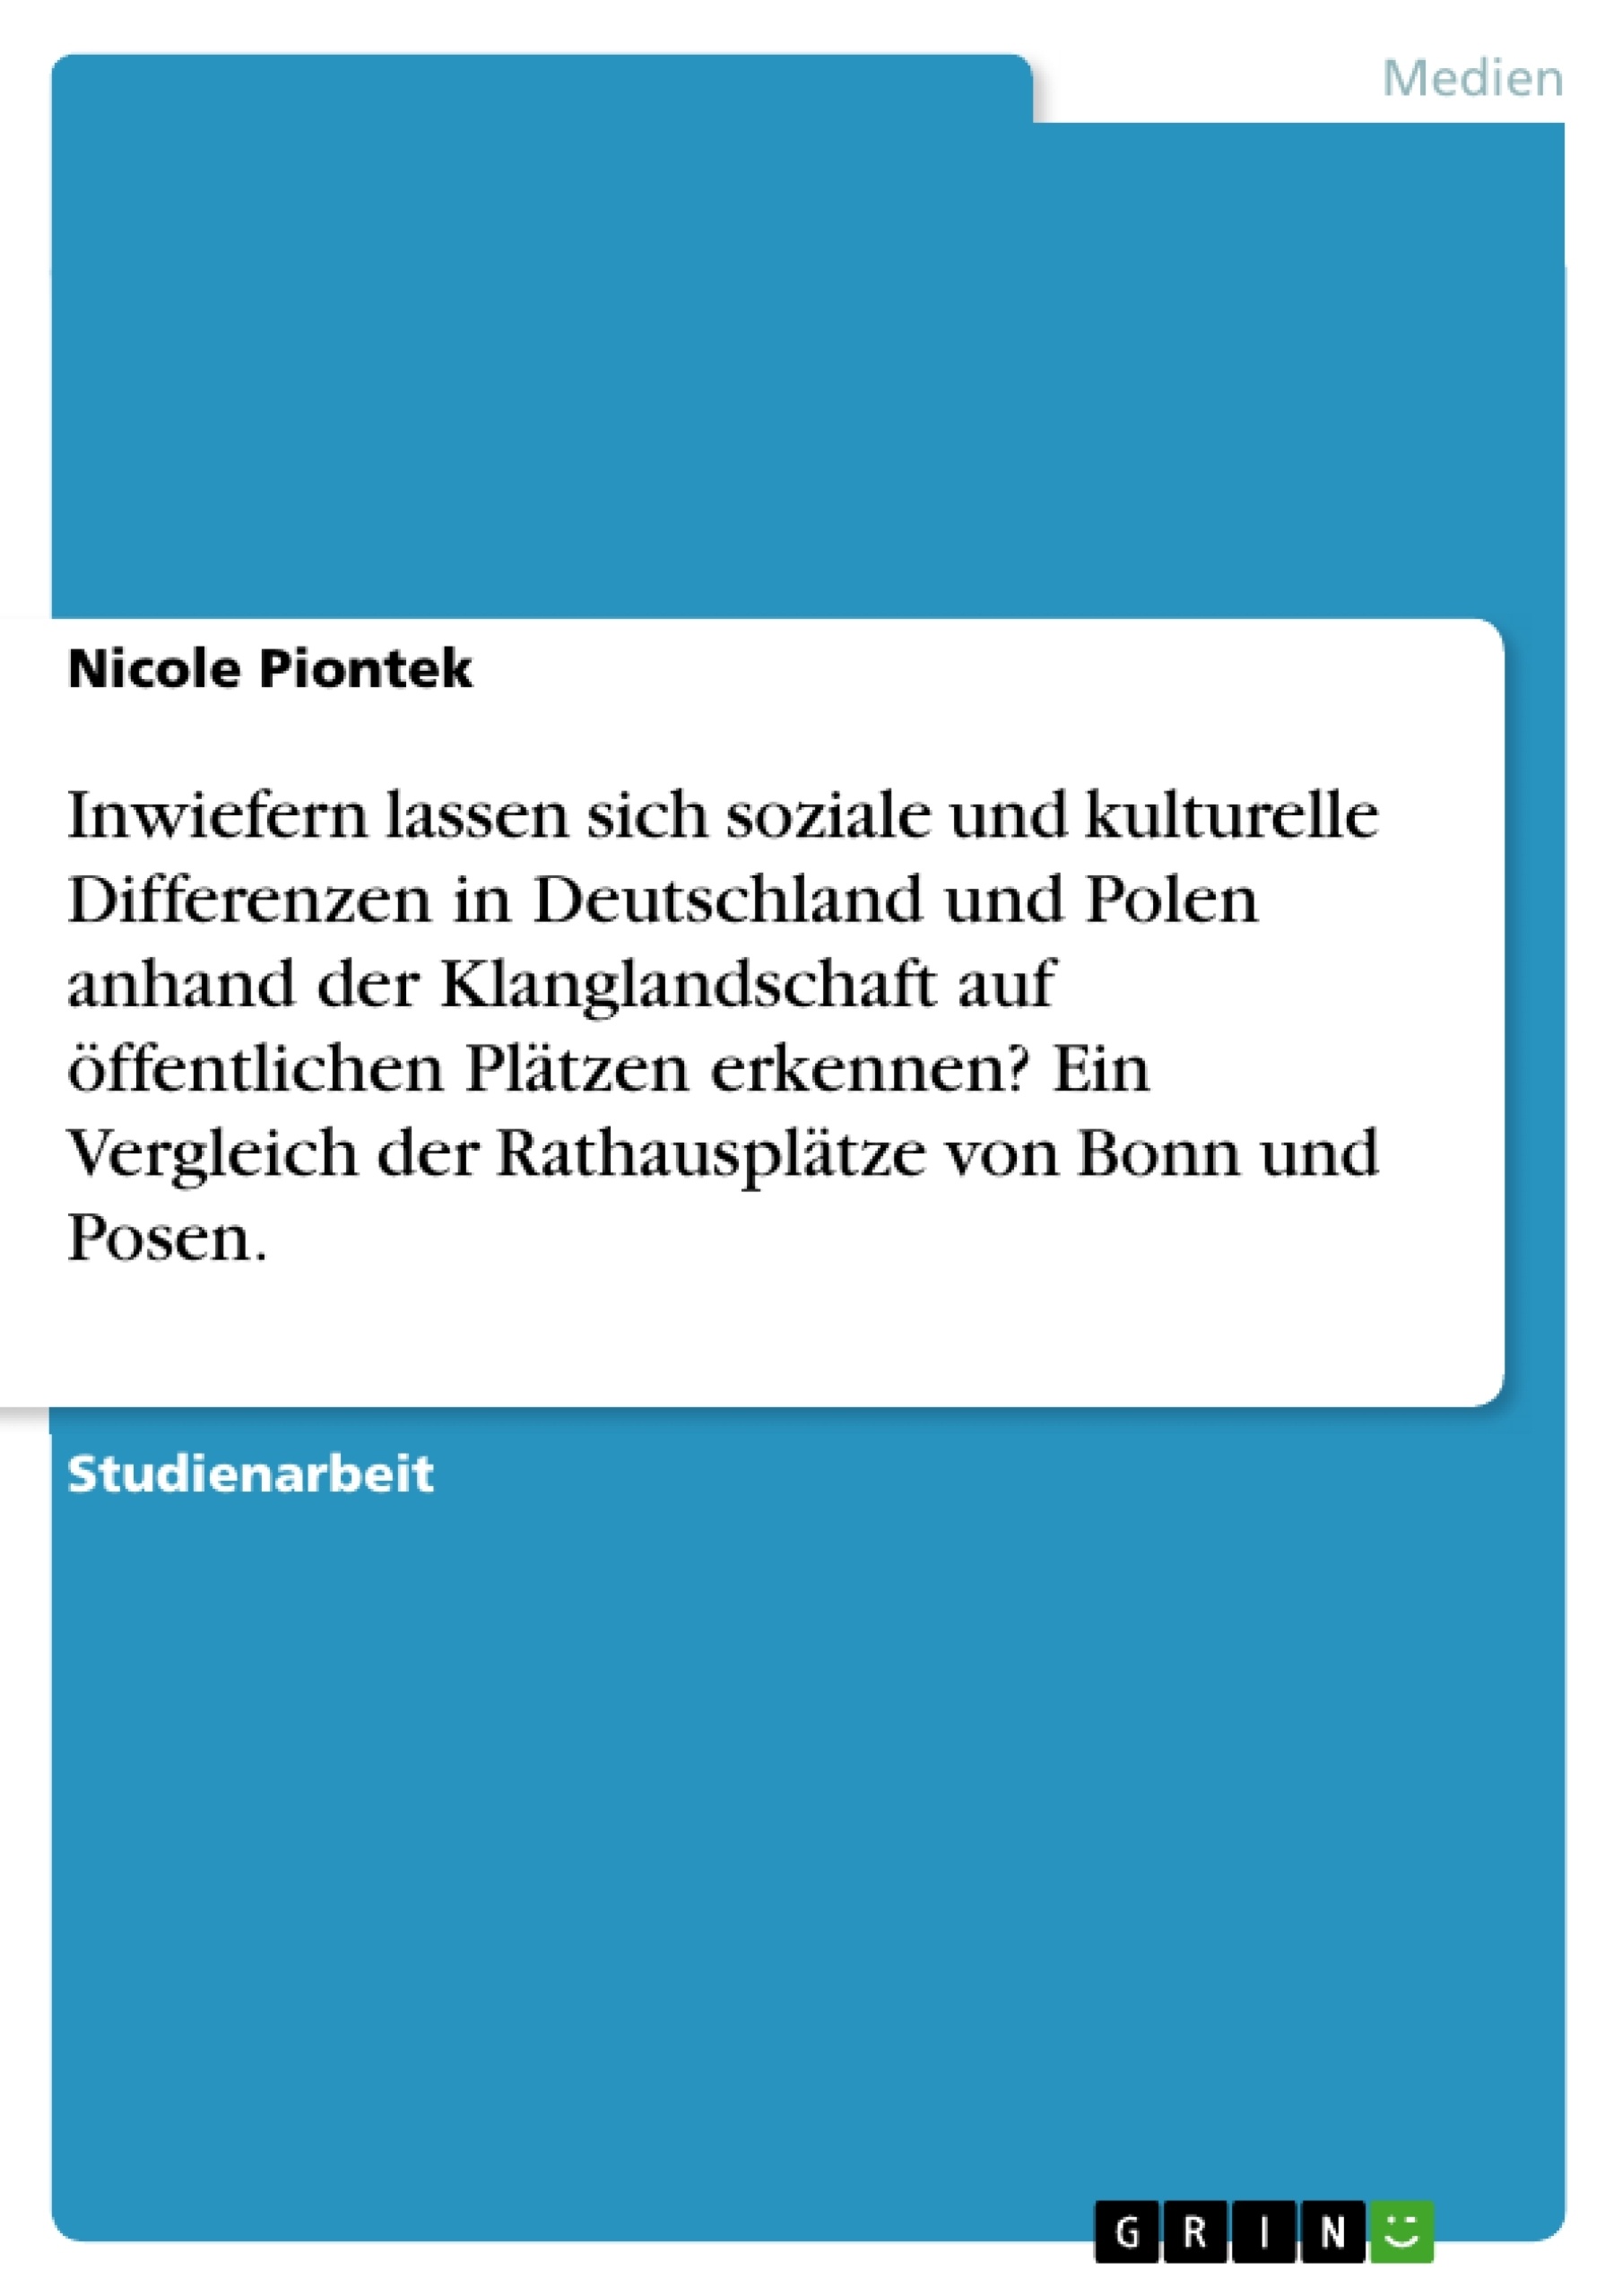 Titel: Inwiefern lassen sich soziale und kulturelle Differenzen in Deutschland und Polen anhand der Klanglandschaft auf öffentlichen Plätzen erkennen? Ein Vergleich der Rathausplätze von Bonn und Posen.